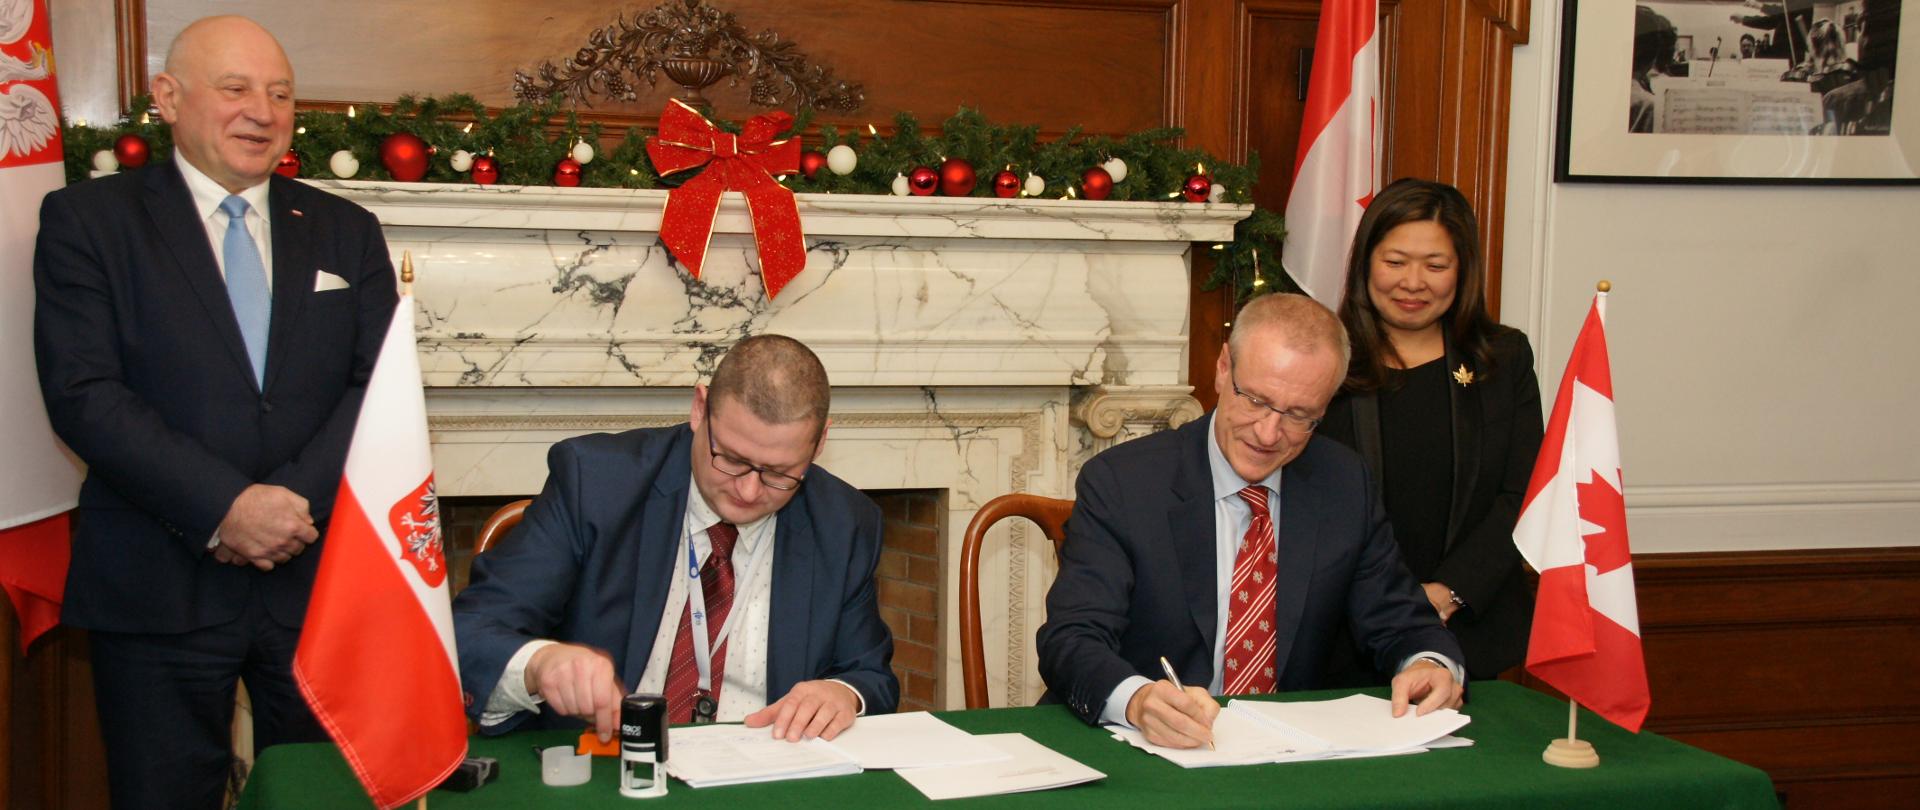 Od lewej: Konsul Generalny RP w Toronto Krzysztof Grzelczyk, Michał Tomasiak (GM Infis Company), Borys Wrzesnewskyj (właściciel M-C Dairy), Minister Mary NG